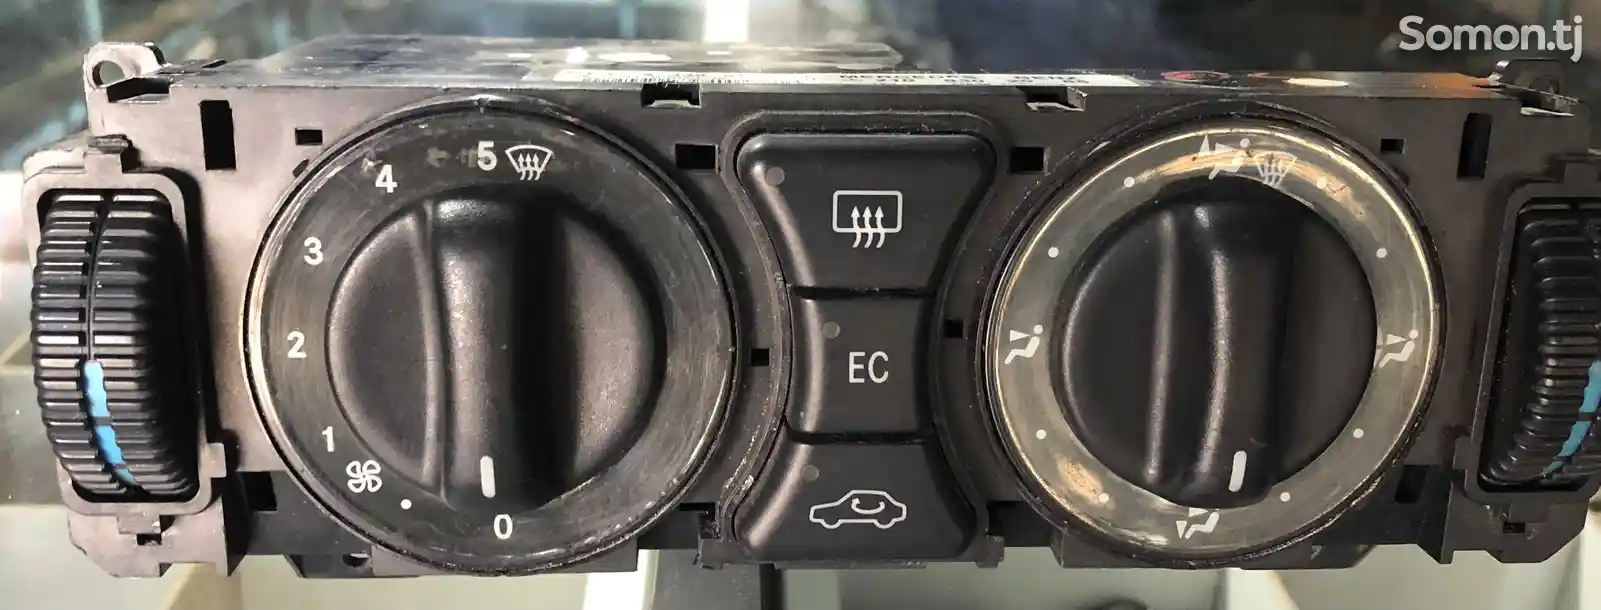 Блок управления климат-контролем Mercedes E-Class W210